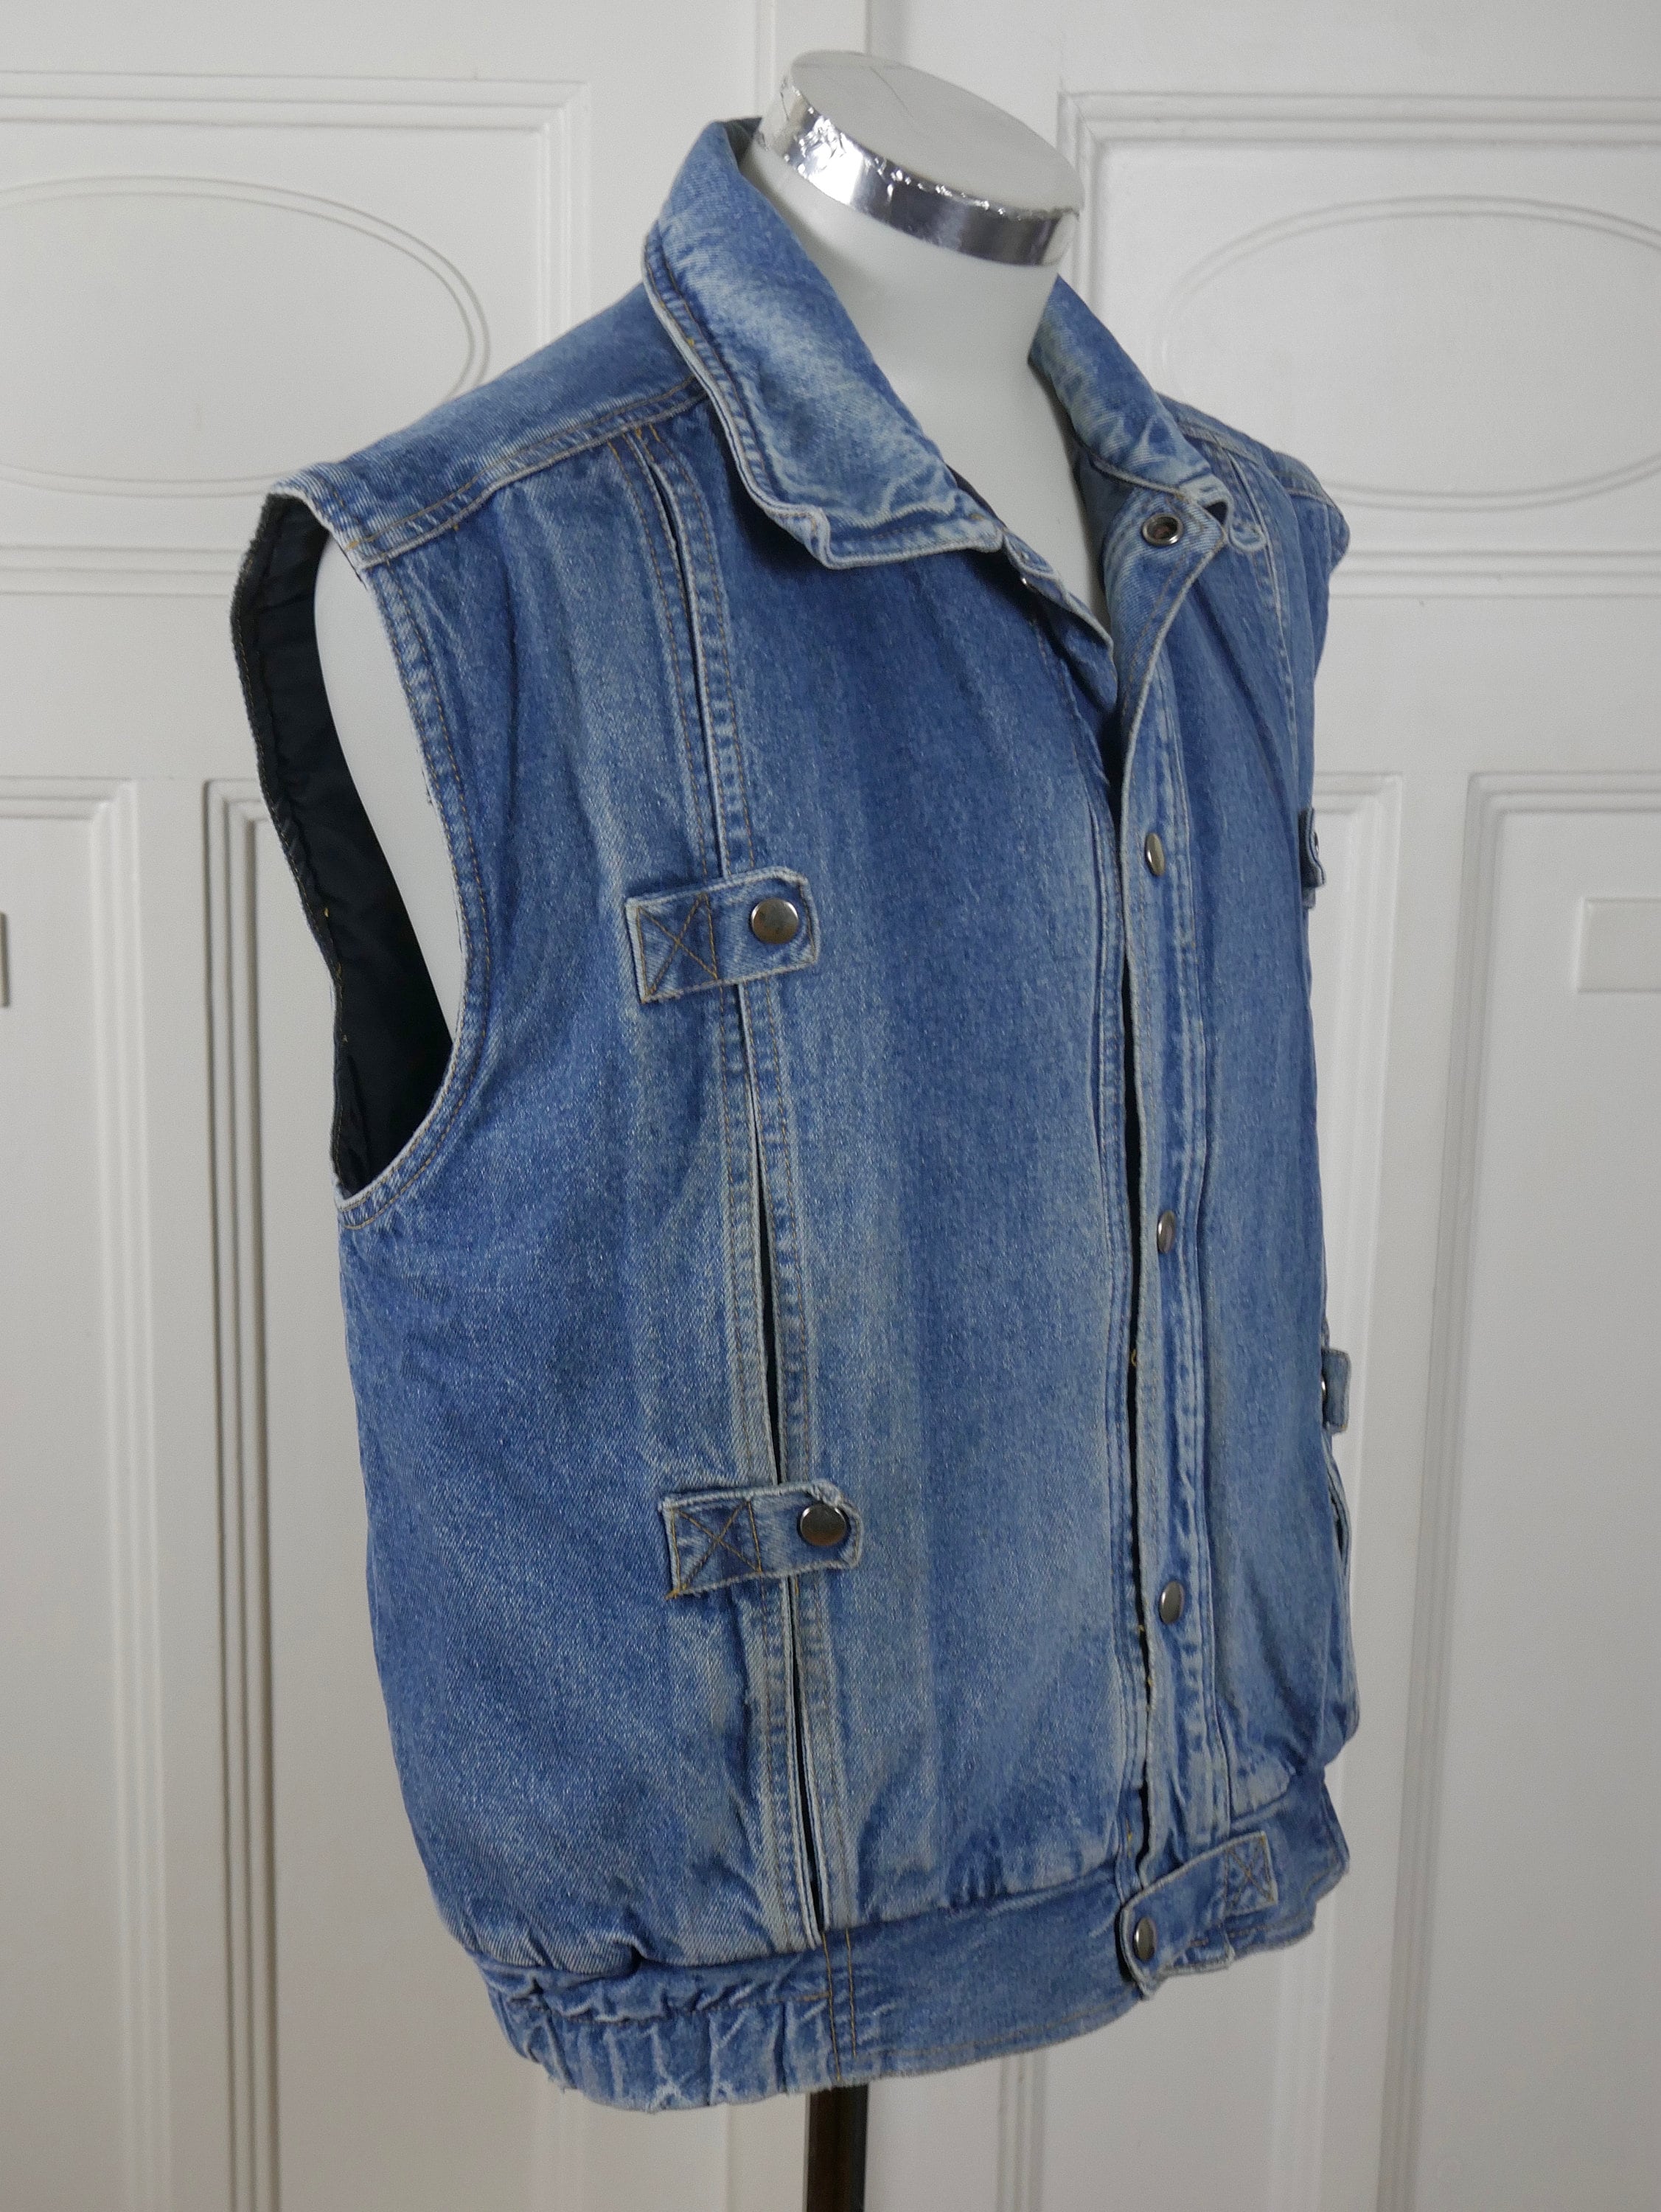 Vintage 80s 90s Mens Sleeveless Jean Jacket, Blue Denim Vest, Absolut Sleeveless  Denim Jacket, 1980s 90s Grunge Waistcoat, - Etsy